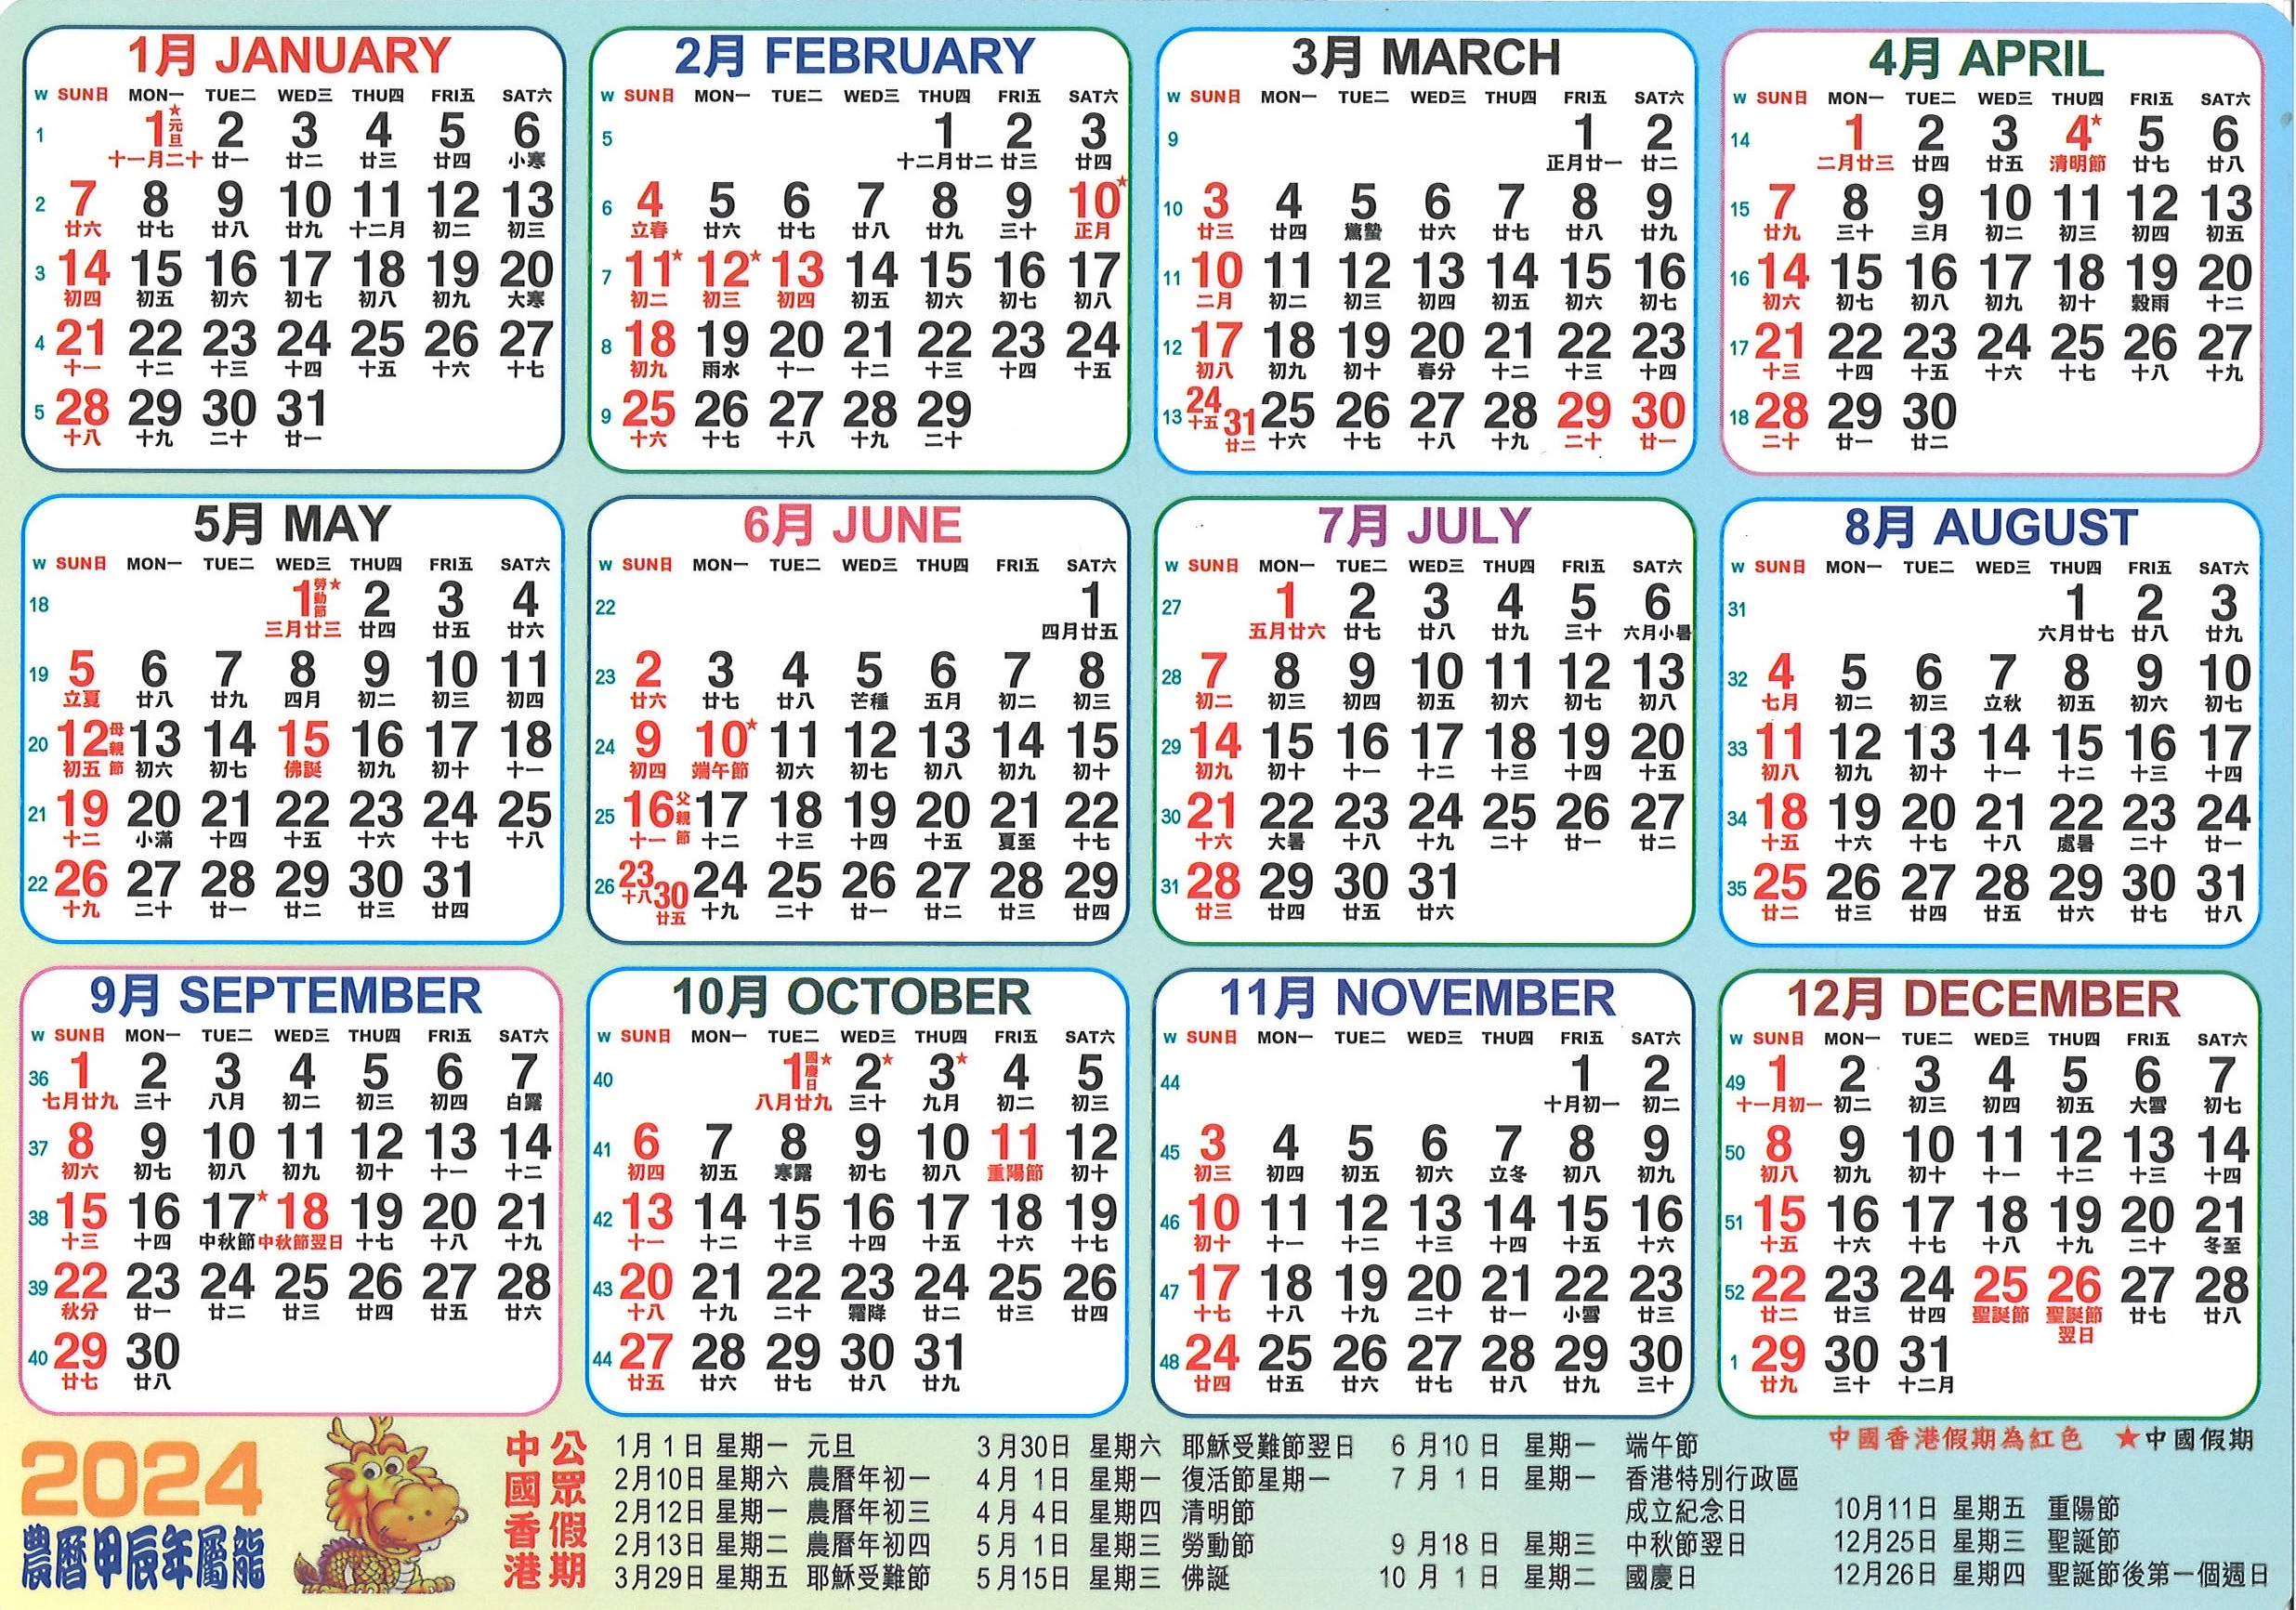 2024年大型年曆咭/ 中型年曆咭/ 細年曆咭 志成文具有限公司 CHI SHING STATIONERY CO., LTD.